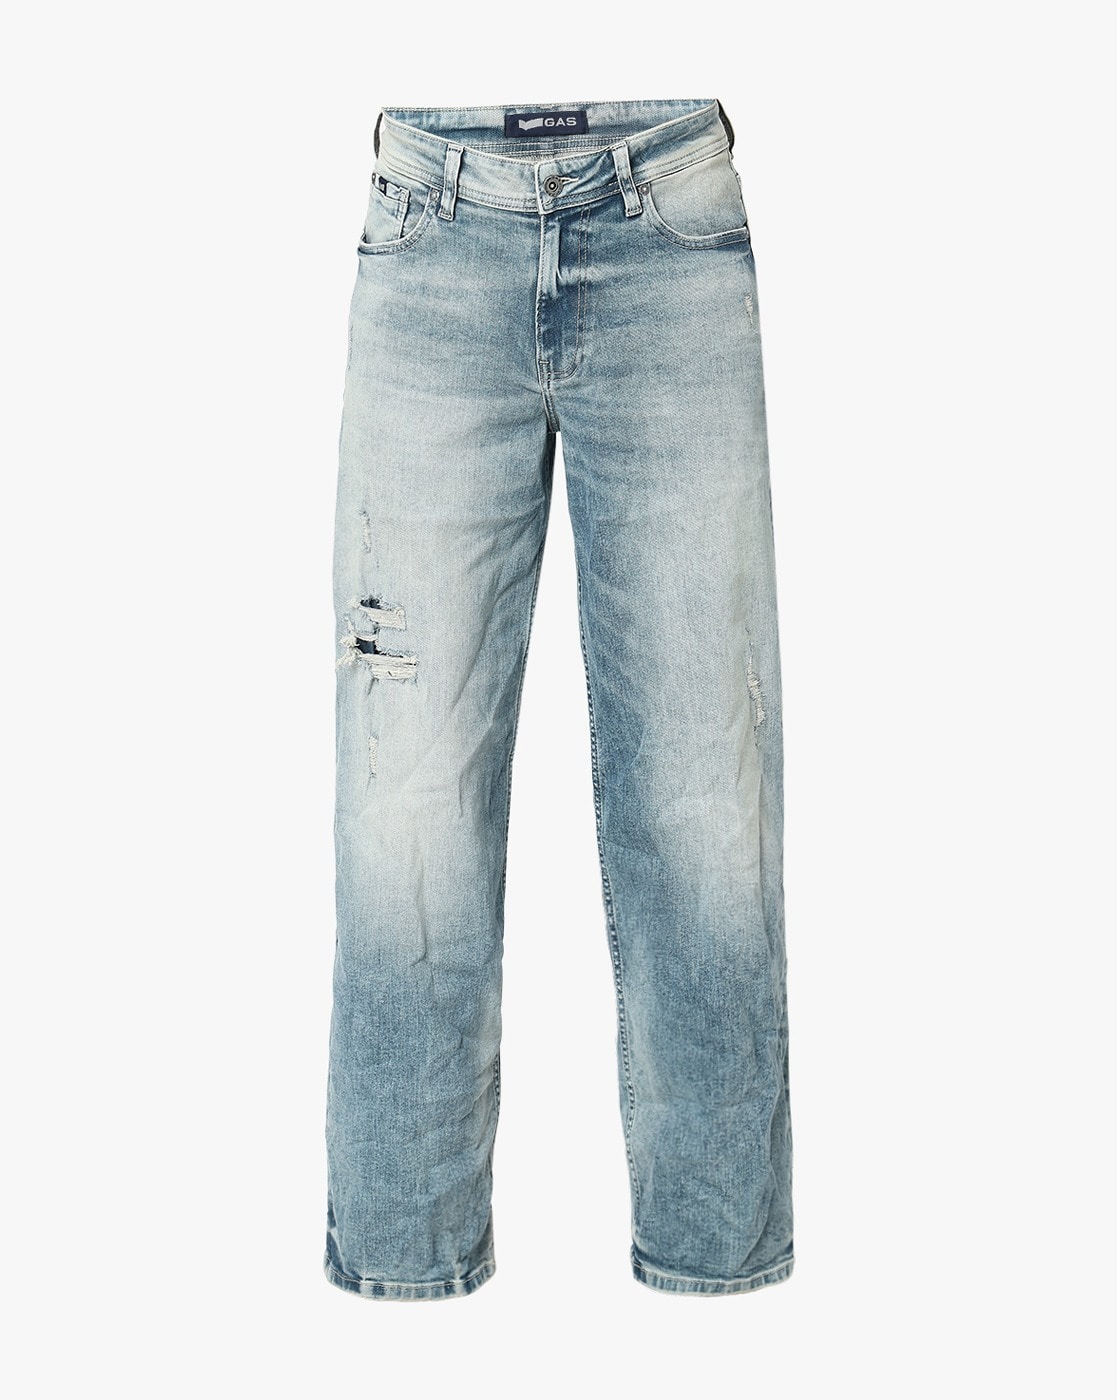 GAS Man Jeans 5 Pockets Art. A3130 WN22 L32 Mod. Sax Zip Rev - Kay Blue  Denim | eBay